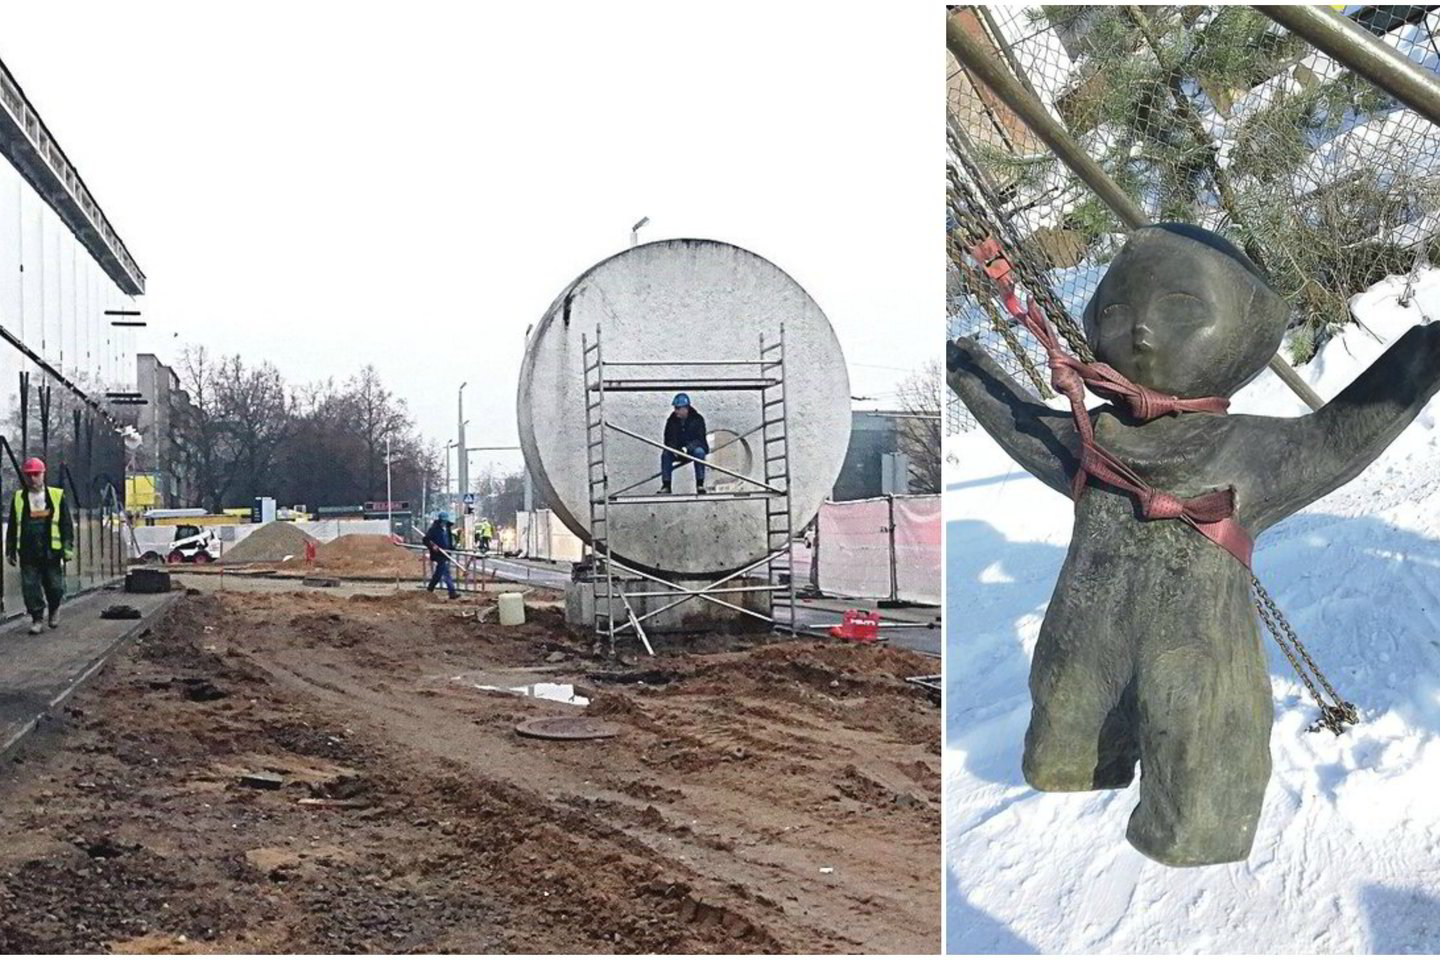  Sovietmečiu prie Žirmūnų restorano stovėjęs „Saulės džiaugsmas“ (nuotr. kairėje) dabar puoš „Lidl“ prieigas. Kitą savaitę čia bus pritvirtinta berniuko skulptūra.